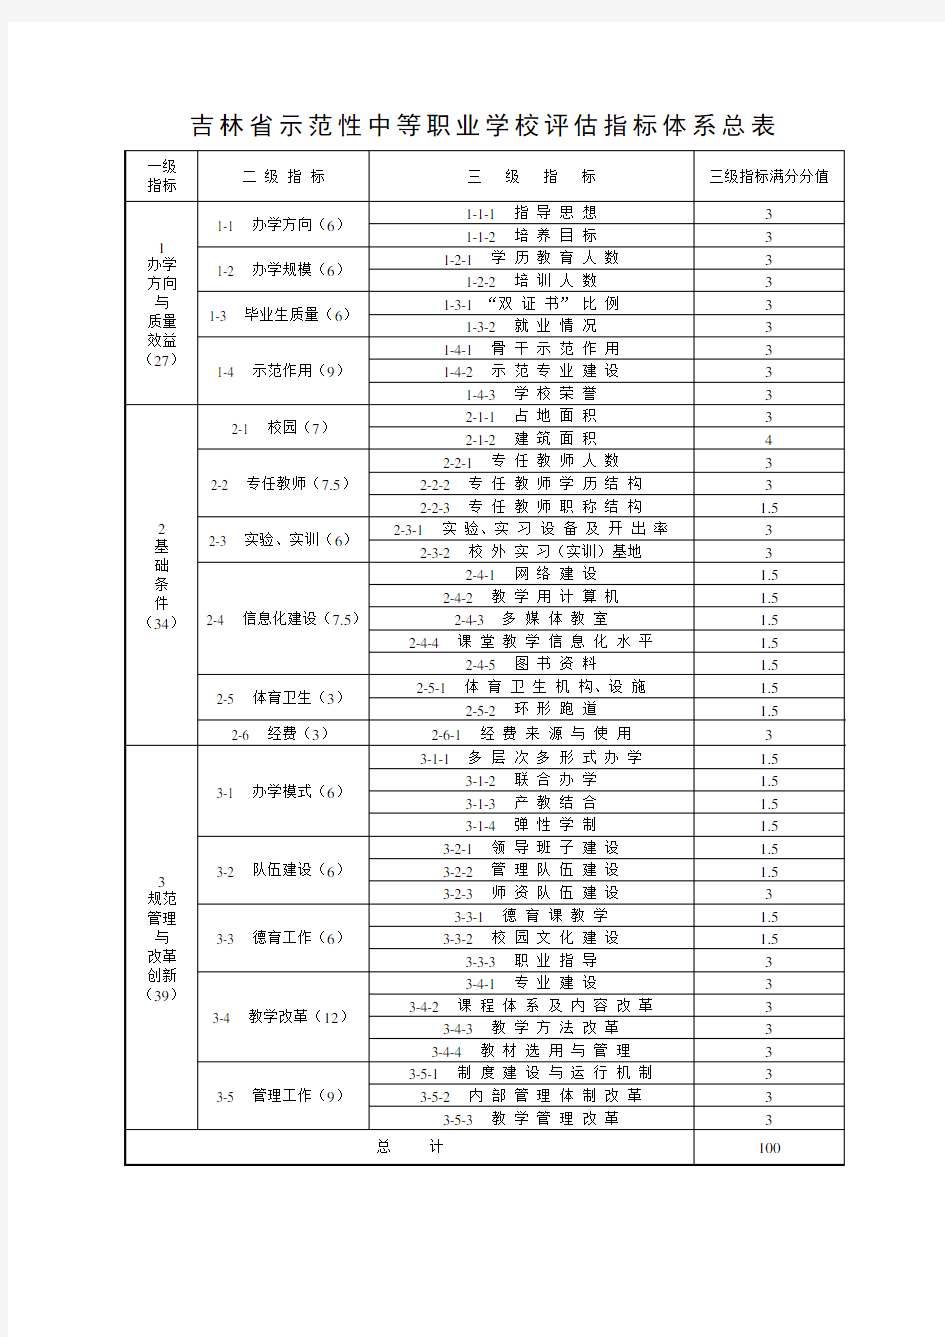 吉林省示范性中等职业学校评估指标体系总表